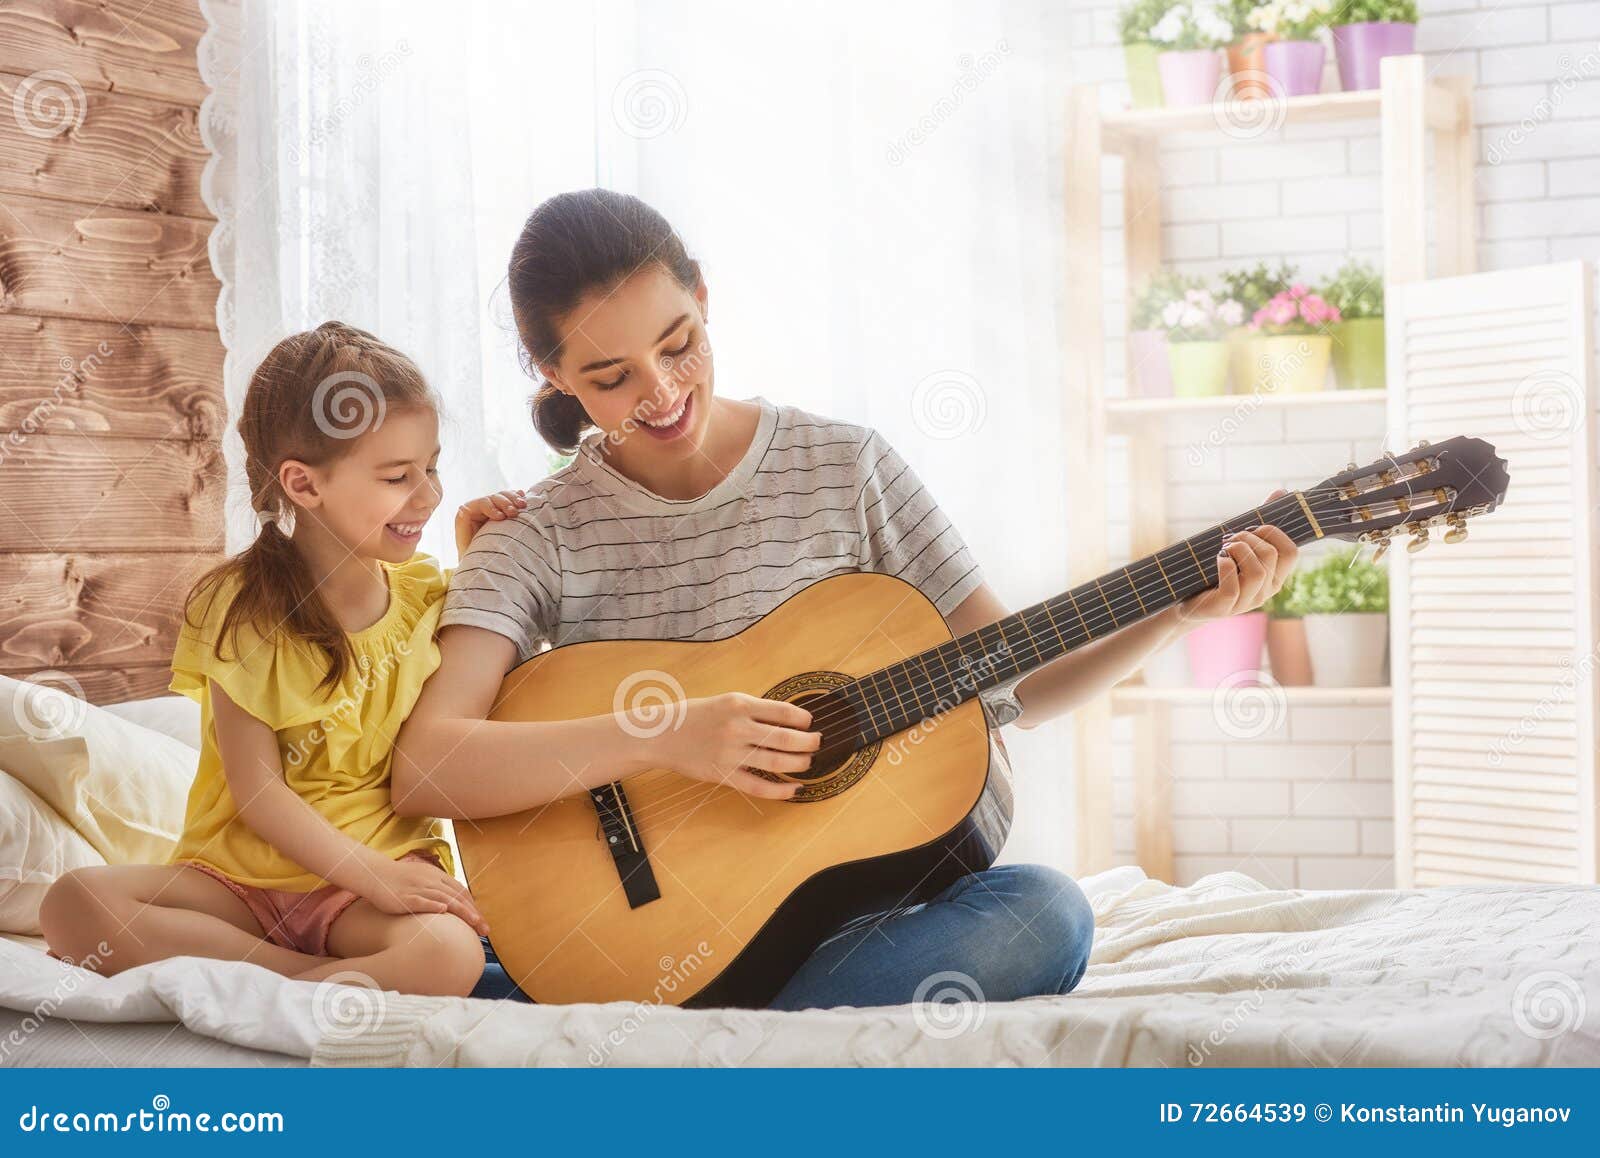 Пение мам. Мама поет ребенку. Пение семья. Семья с ребенком с гитарой. Пение всей семьей.